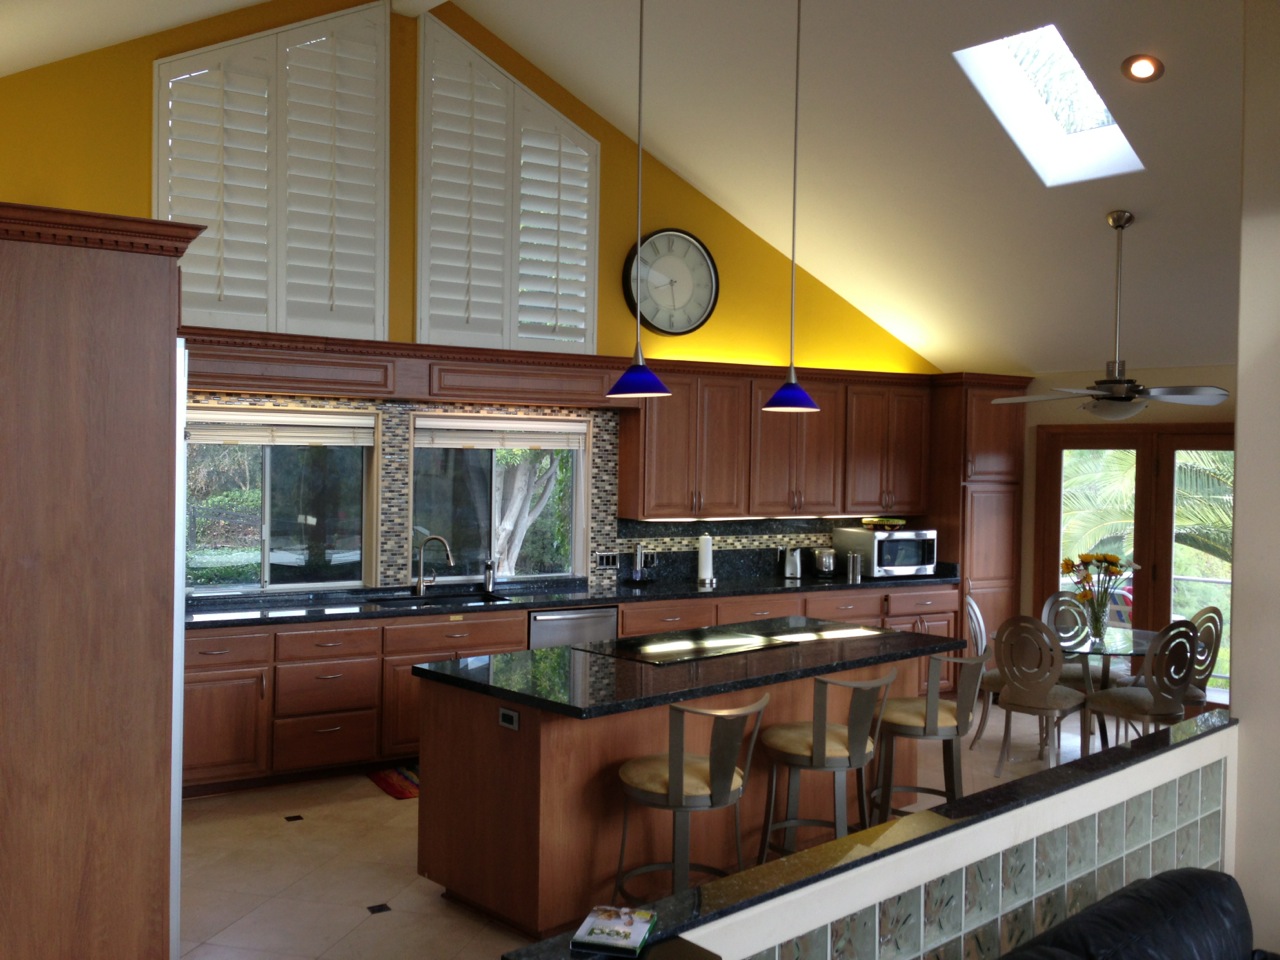 Interior of home kitchen